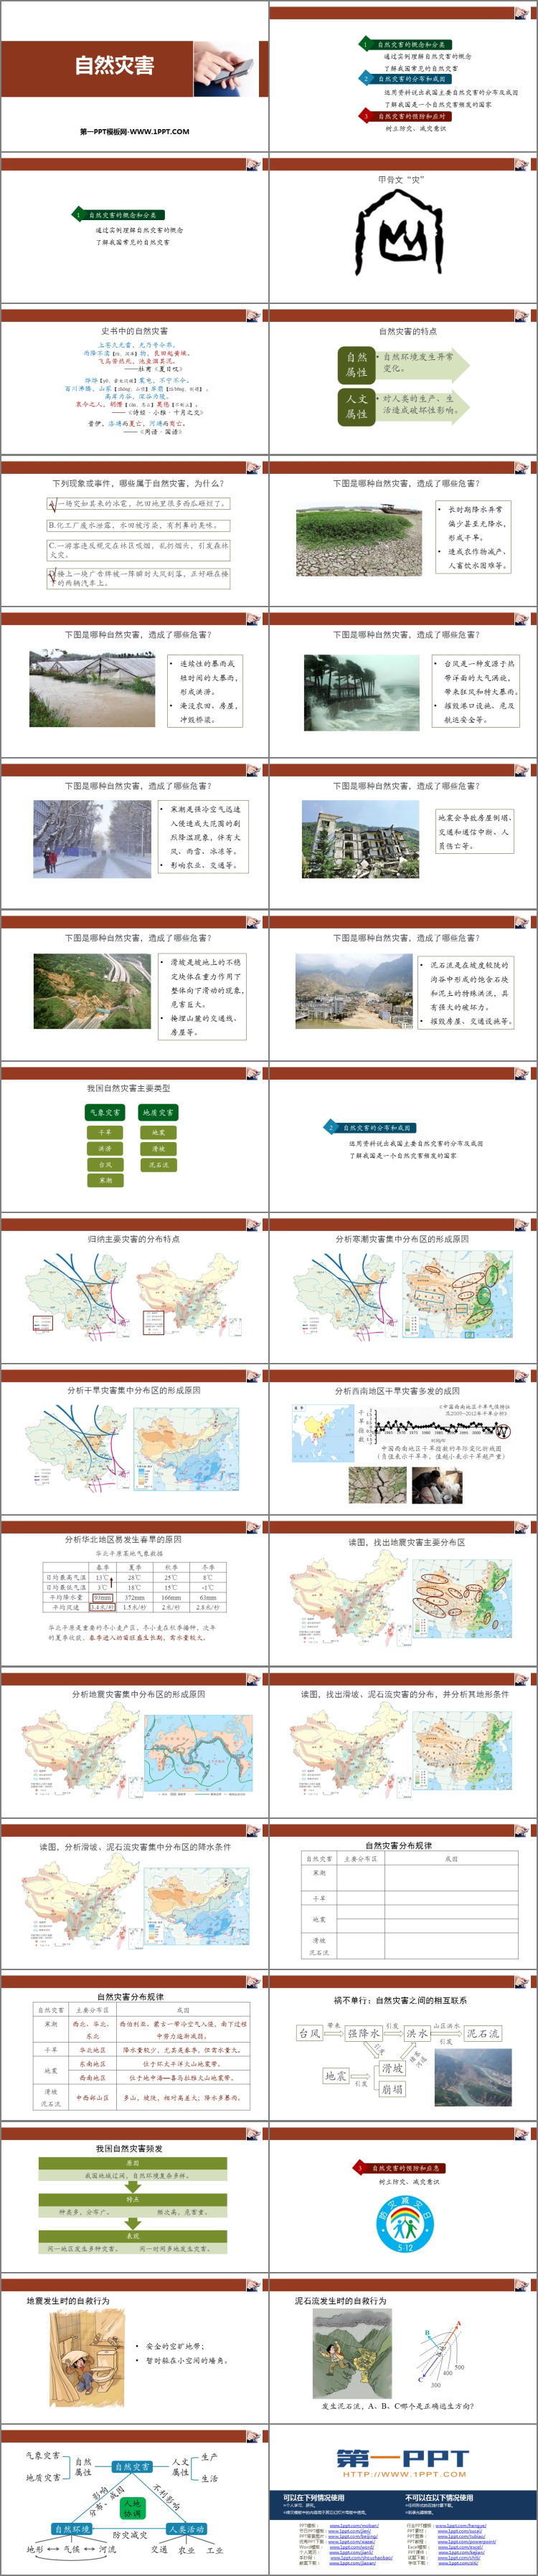 《自然灾害》中国的自然环境PPT下载-预览图02